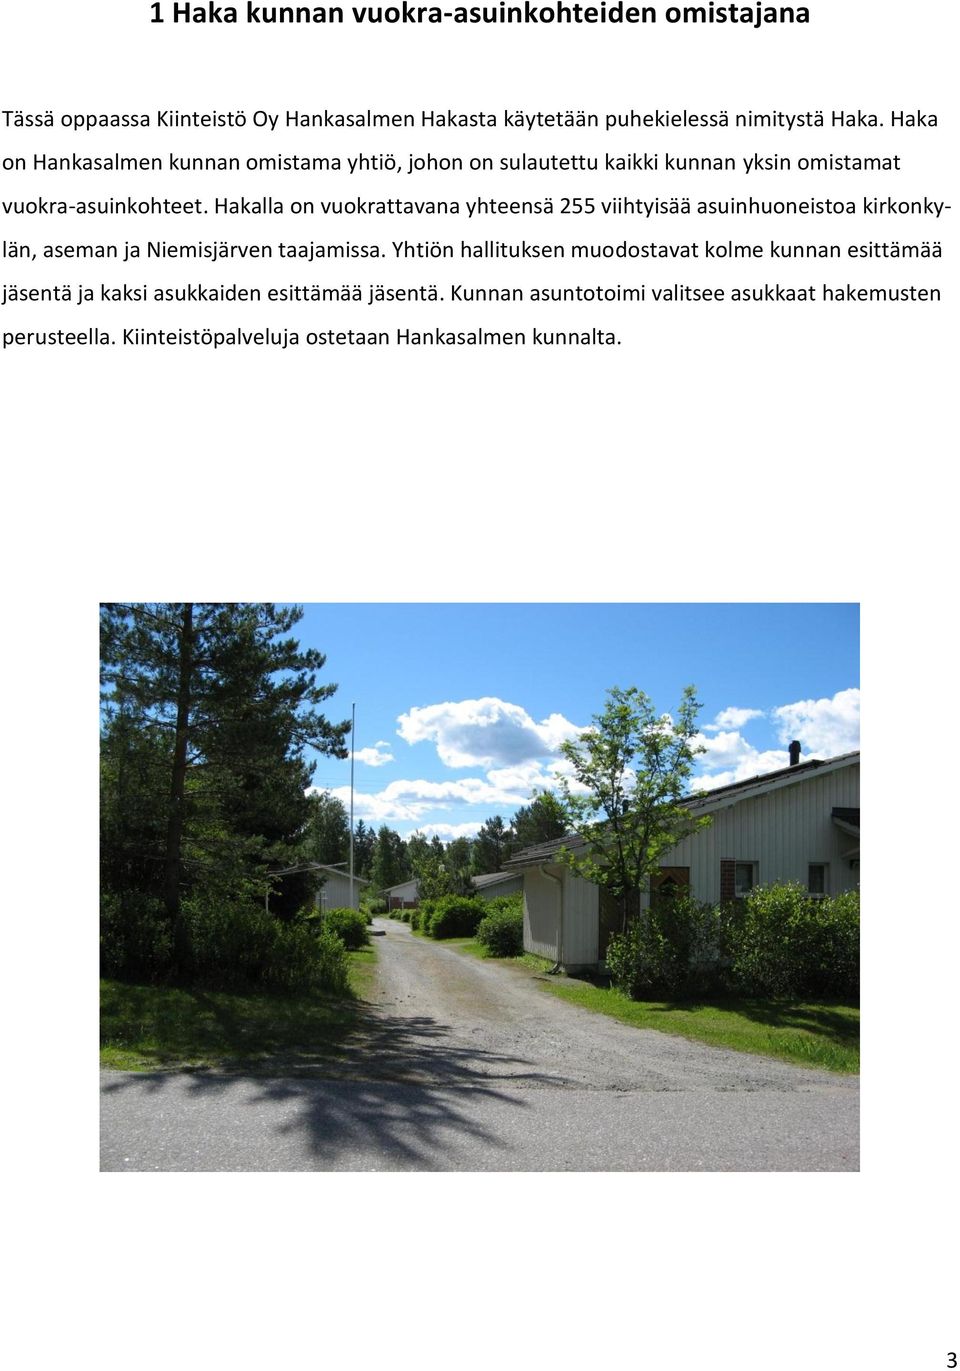 Hakalla on vuokrattavana yhteensä 255 viihtyisää asuinhuoneistoa kirkonkylän, aseman ja Niemisjärven taajamissa.